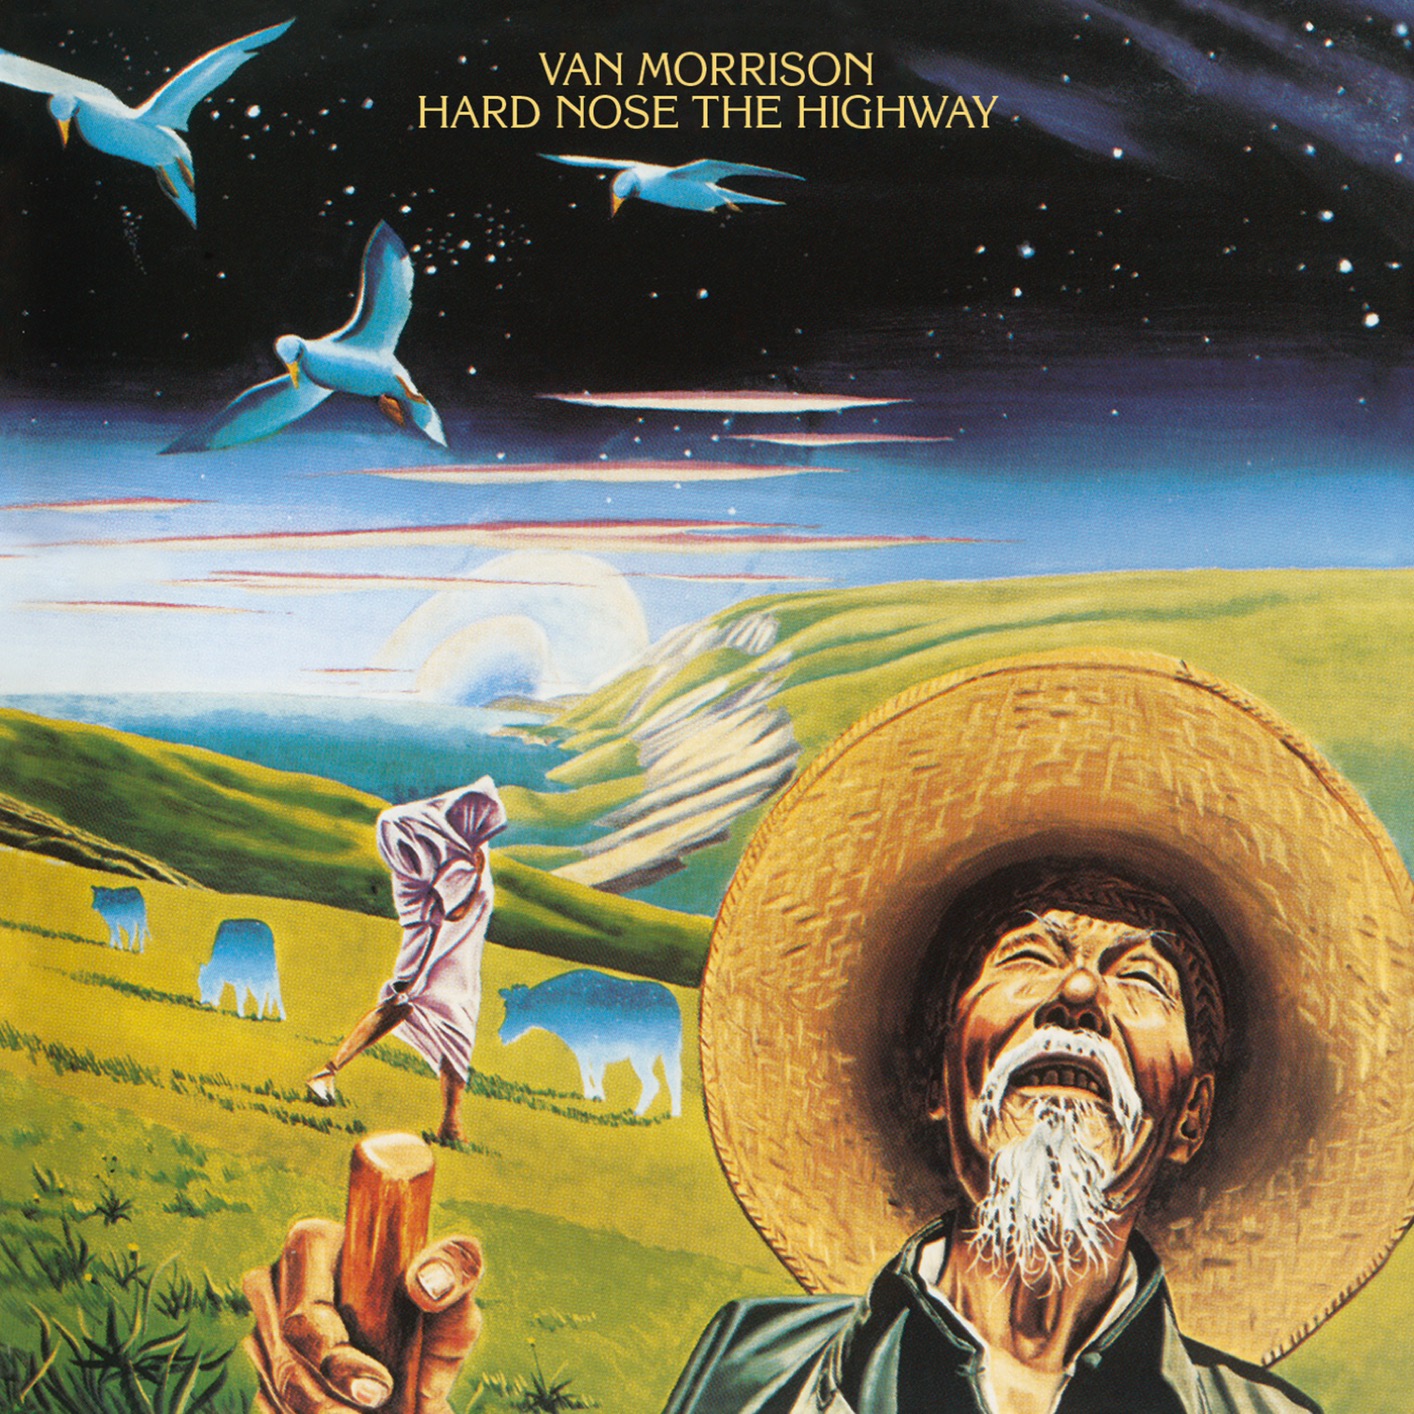 Van Morrison – Hard Nose the Highway (Remastered) (1973/2020) [FLAC 24bit/96kHz]